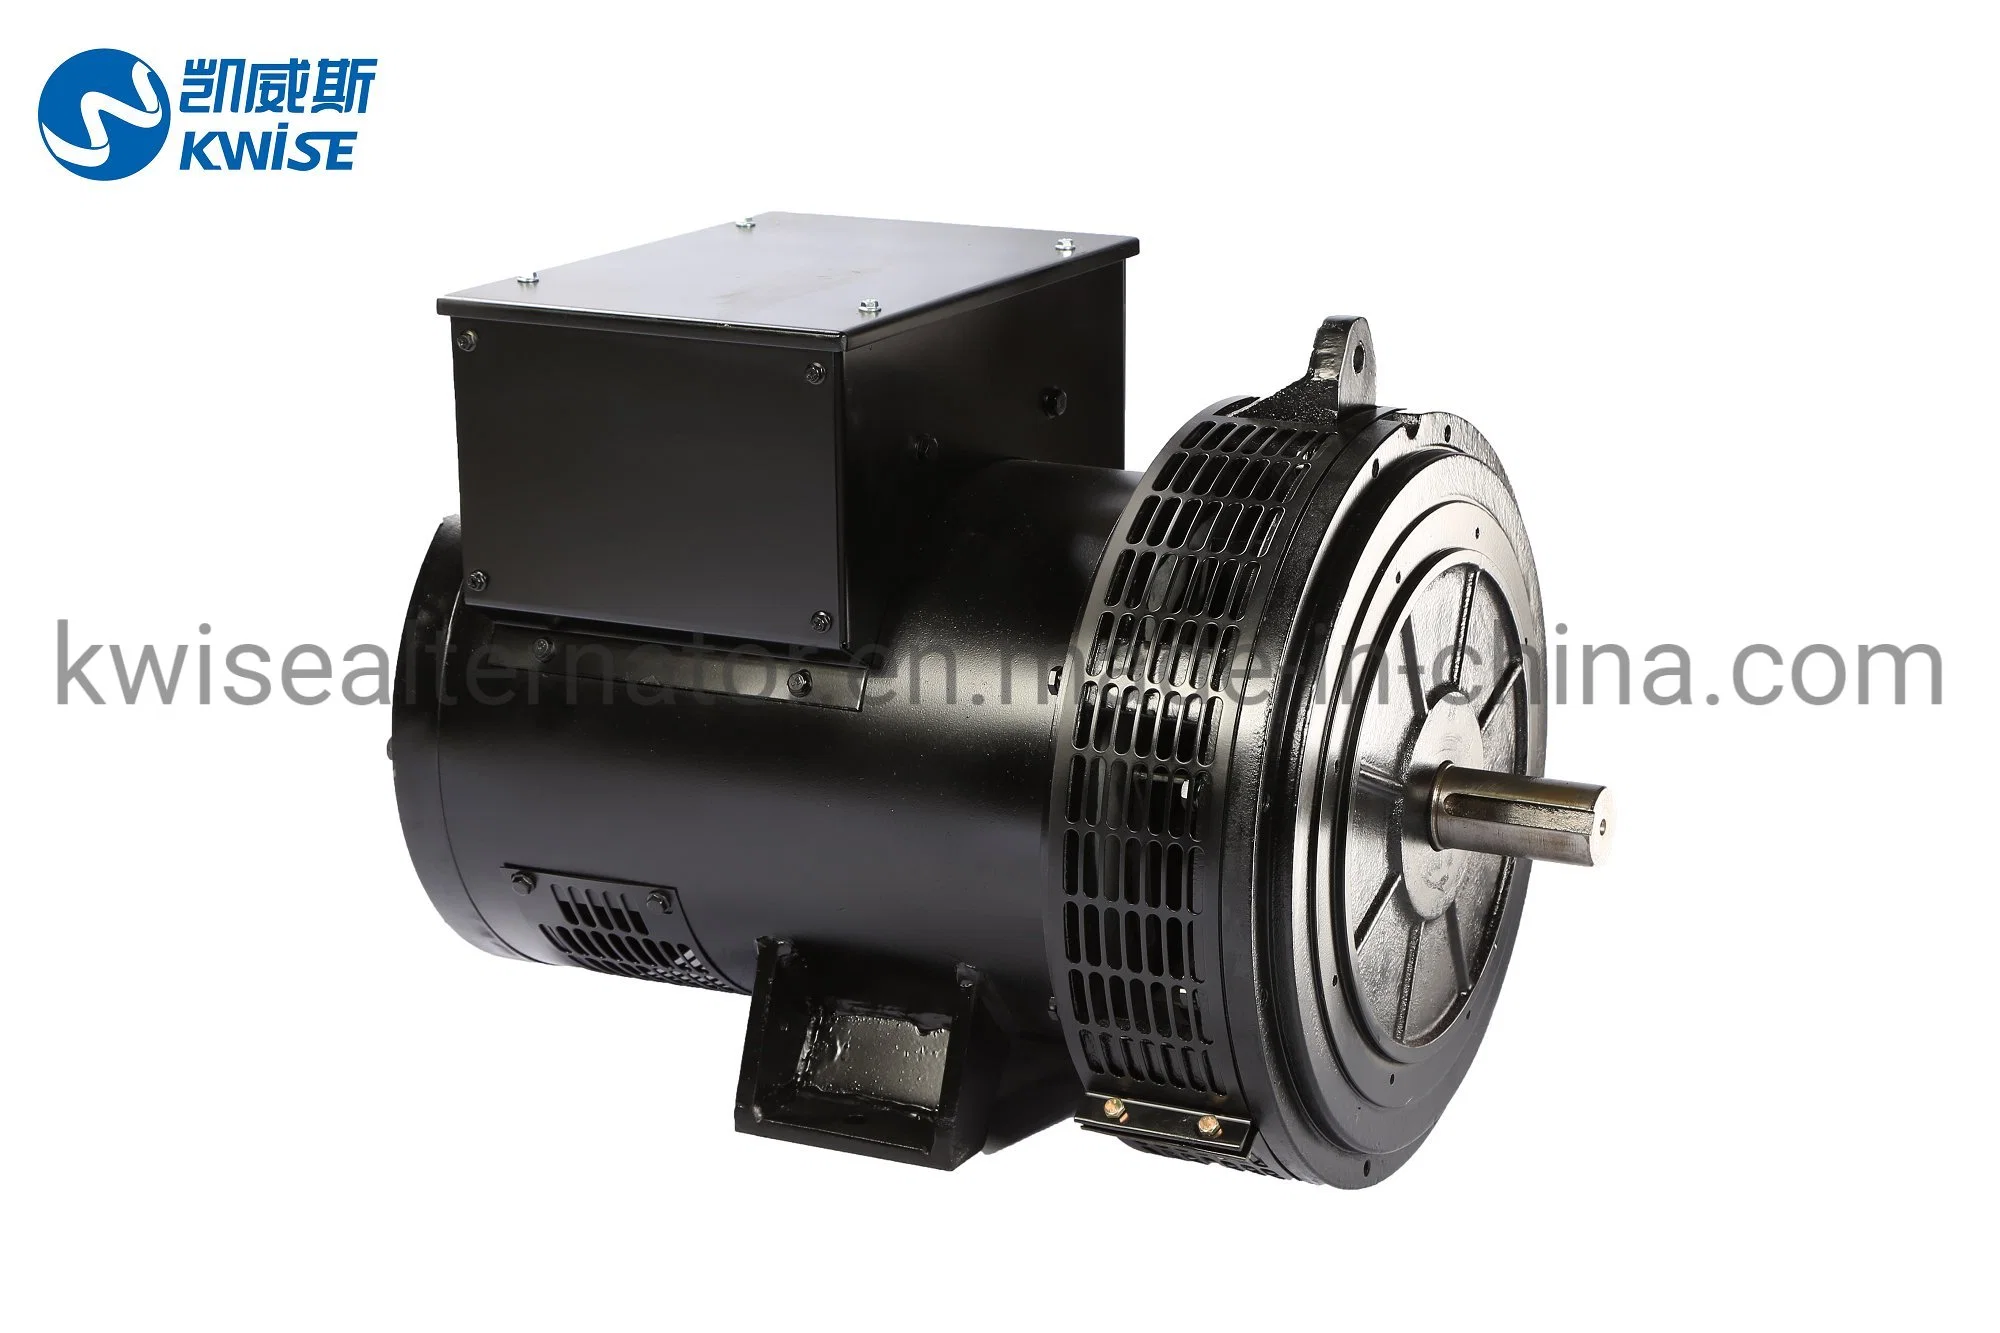 Générateur de régulateur de tension automatique numérique automatique 150 kw 60 Hz Auto Electric Compact Pour petit groupe électrogène diesel